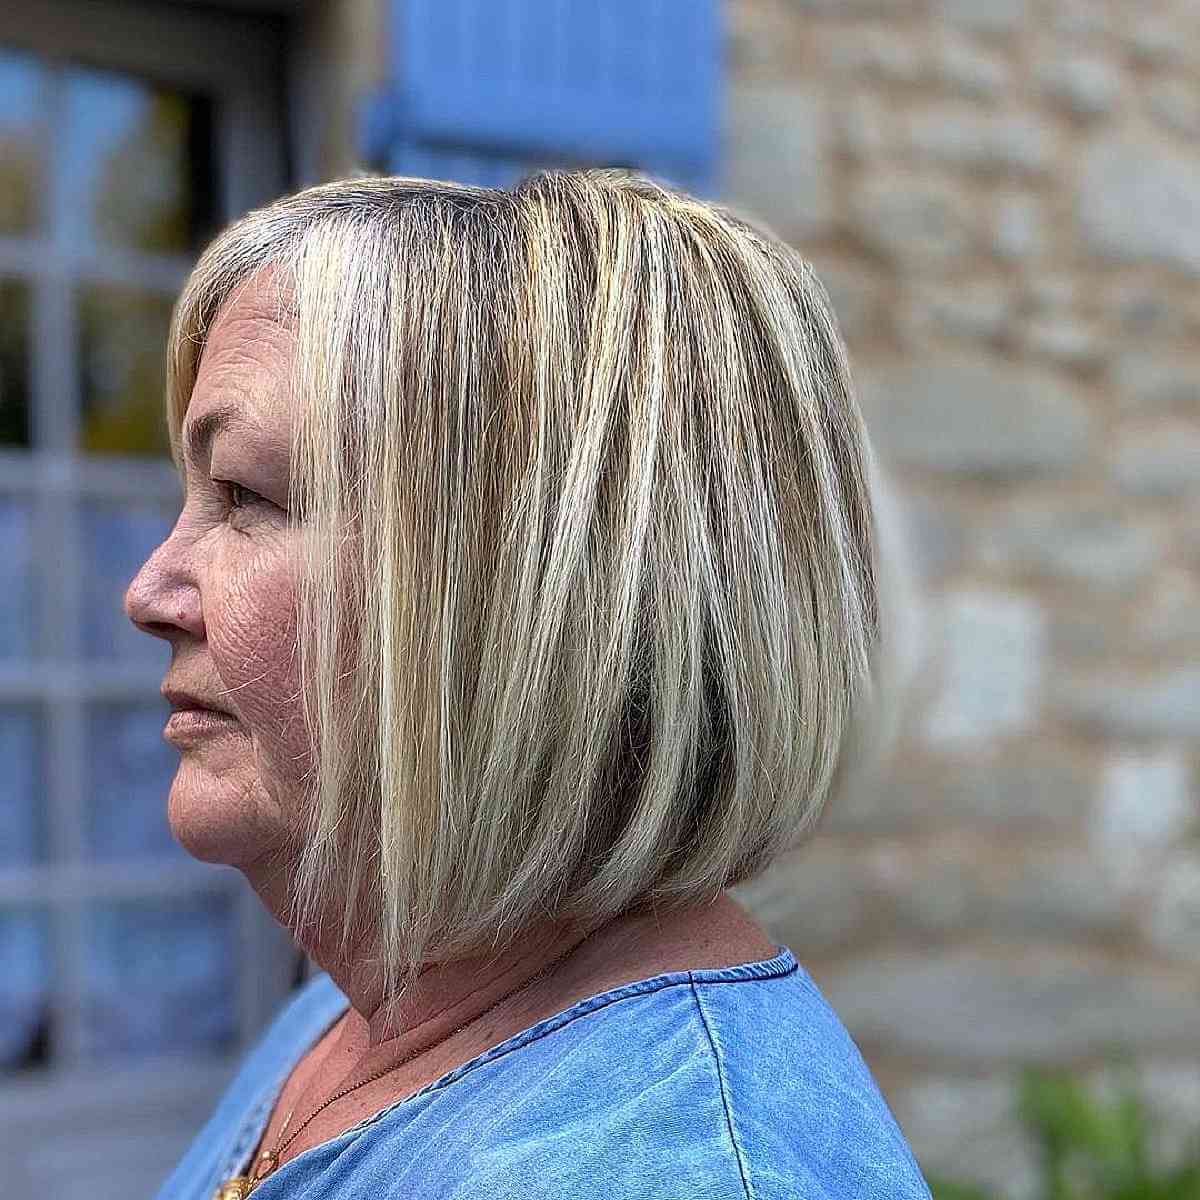 Женщина со стрижкой прямой боб на светлых и редких волосах средней длины